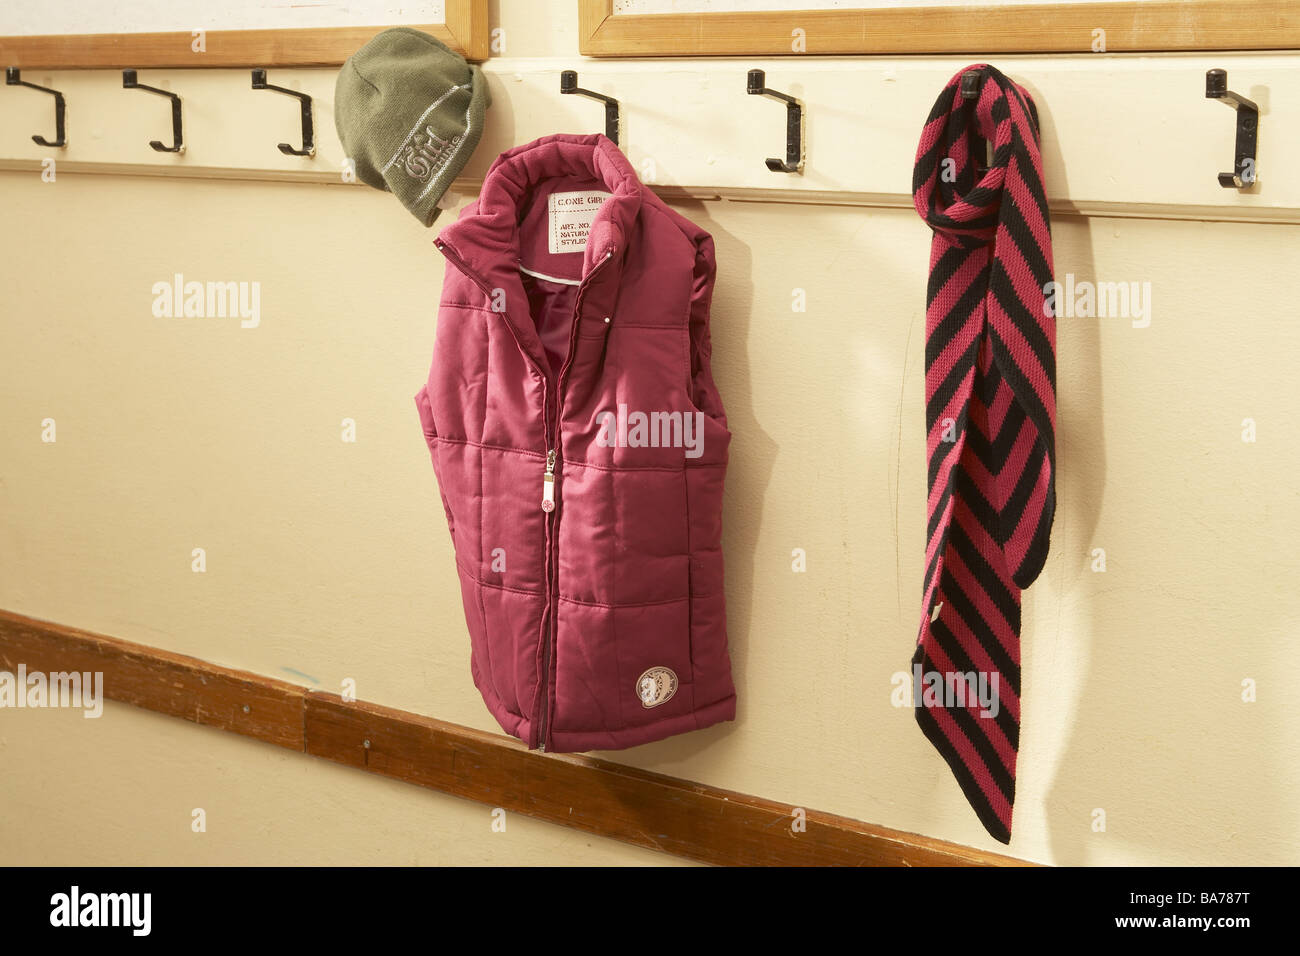 Schultaschen für Kinder, die in einer Garderobe der Grundschule an den Haken  hängen Stockfotografie - Alamy